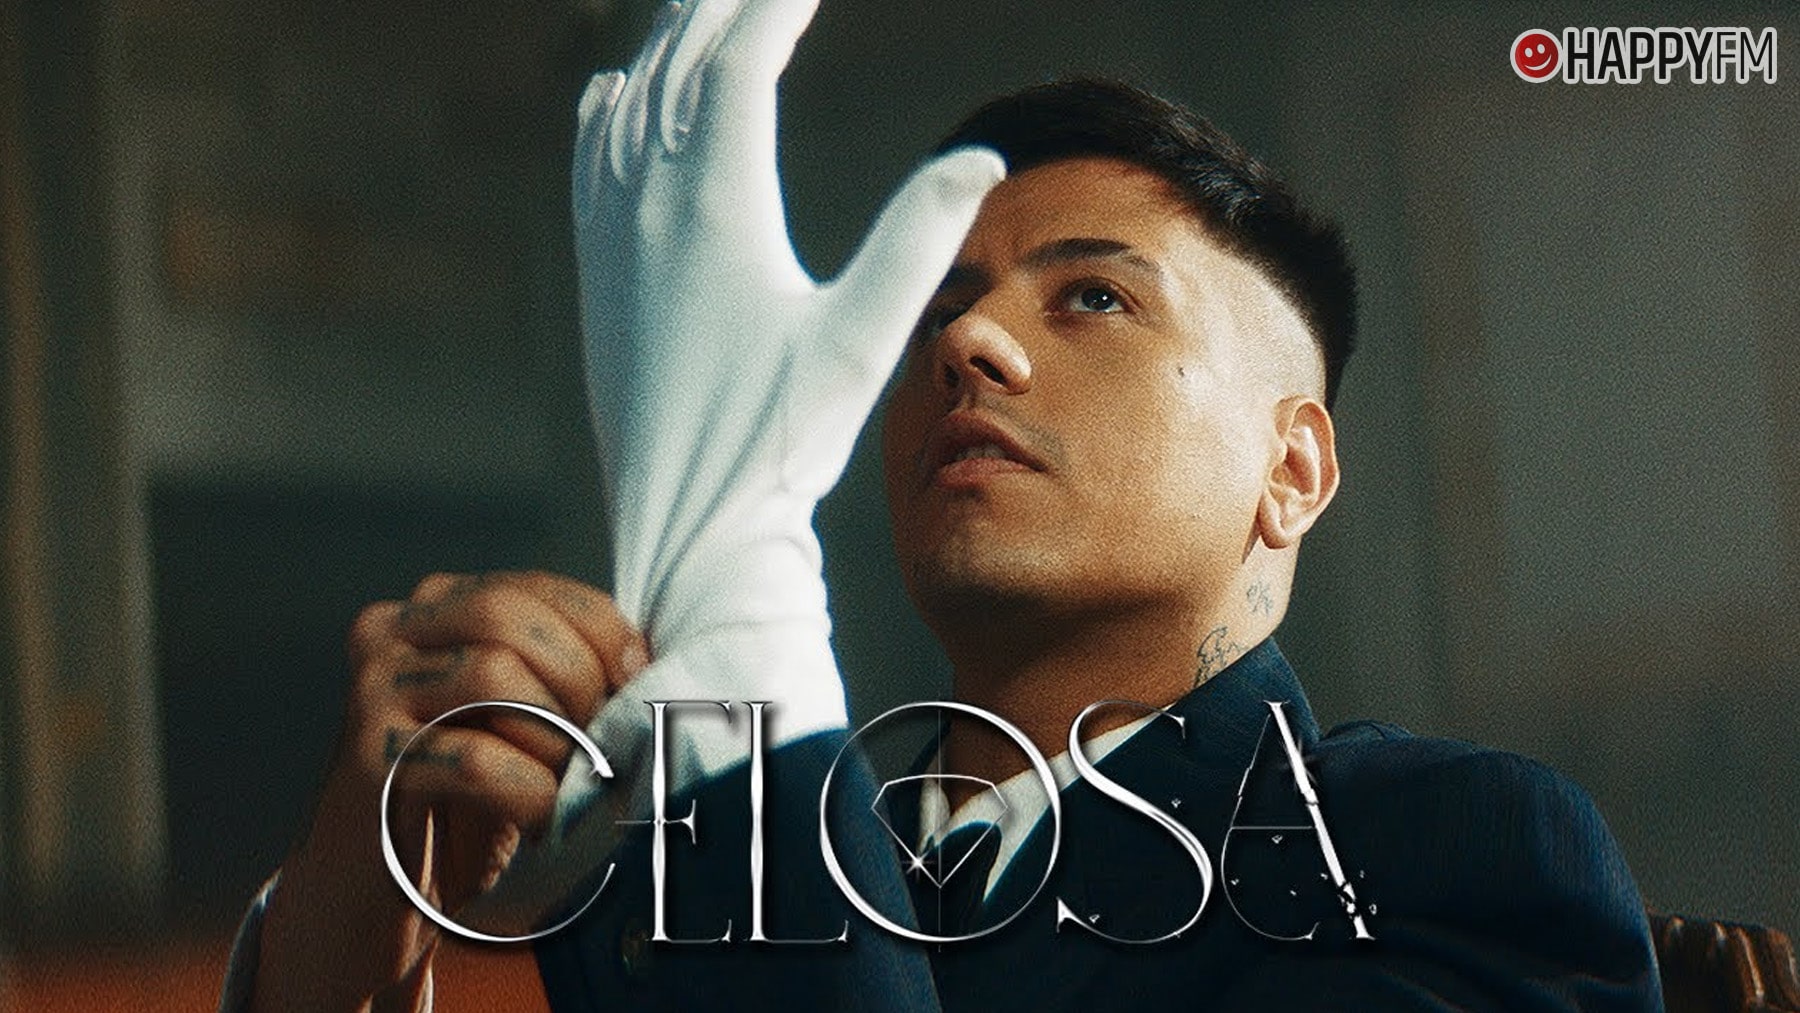 ‘Celosa’, de Duki: letra y vídeo